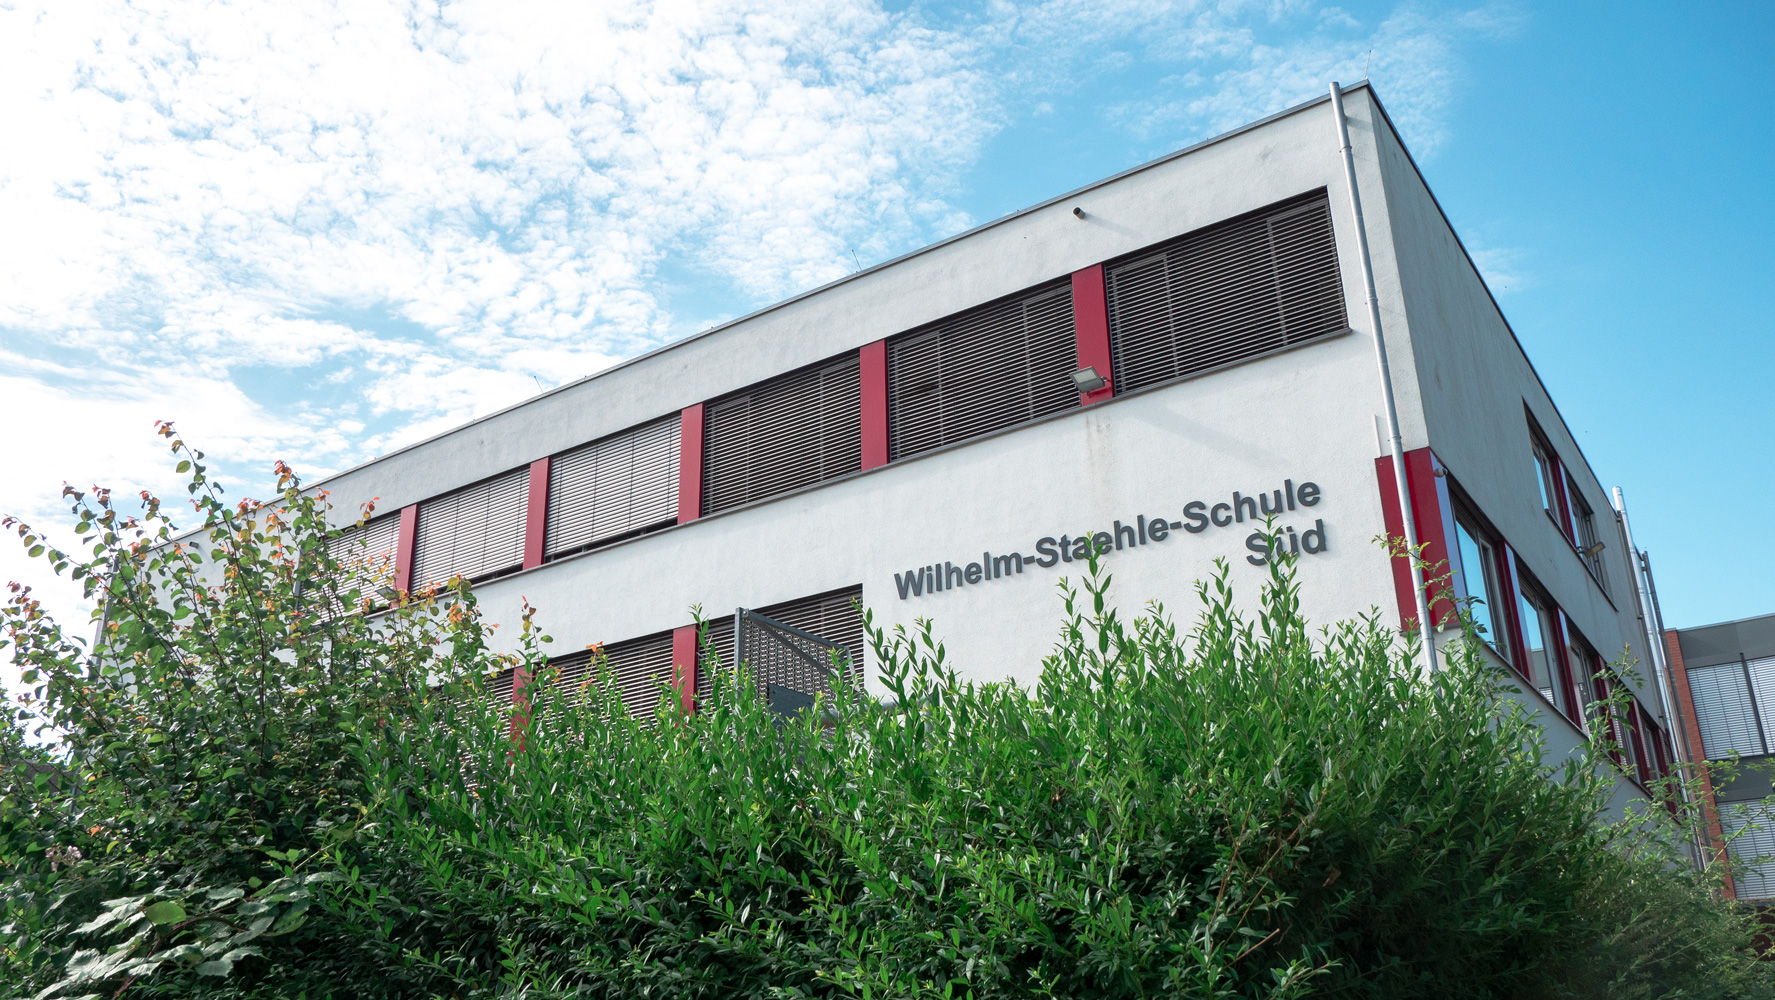 Wilhelm-Staehle-Schule Neuenhaus: Haupt- und Realschule, offene Ganztagsschule